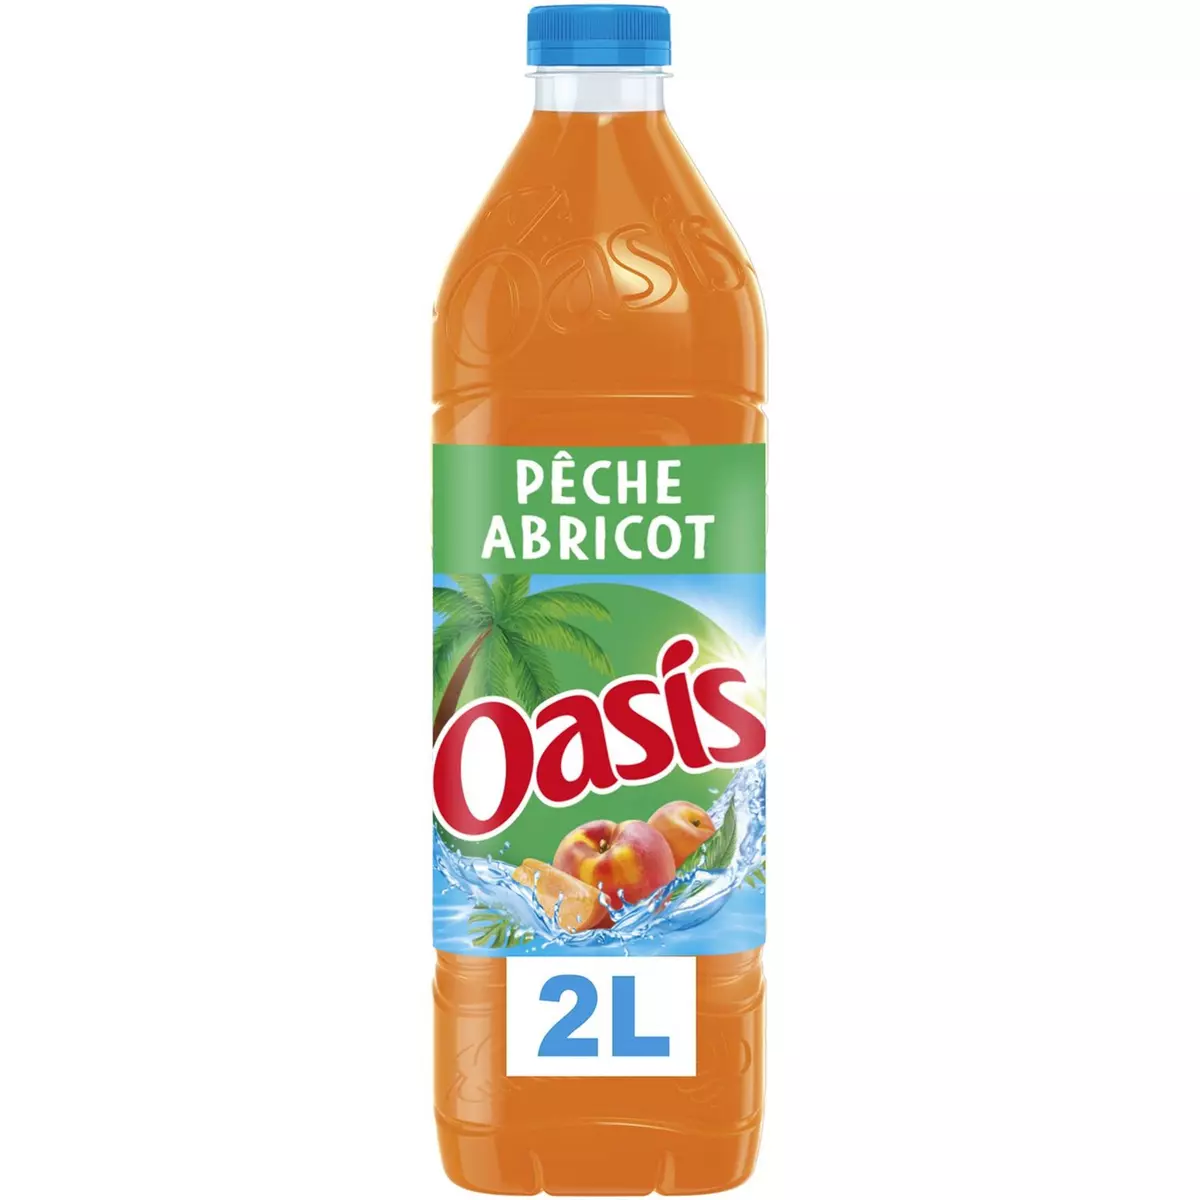 OASIS Boisson aux fruits saveur Pêche Abricot 2l